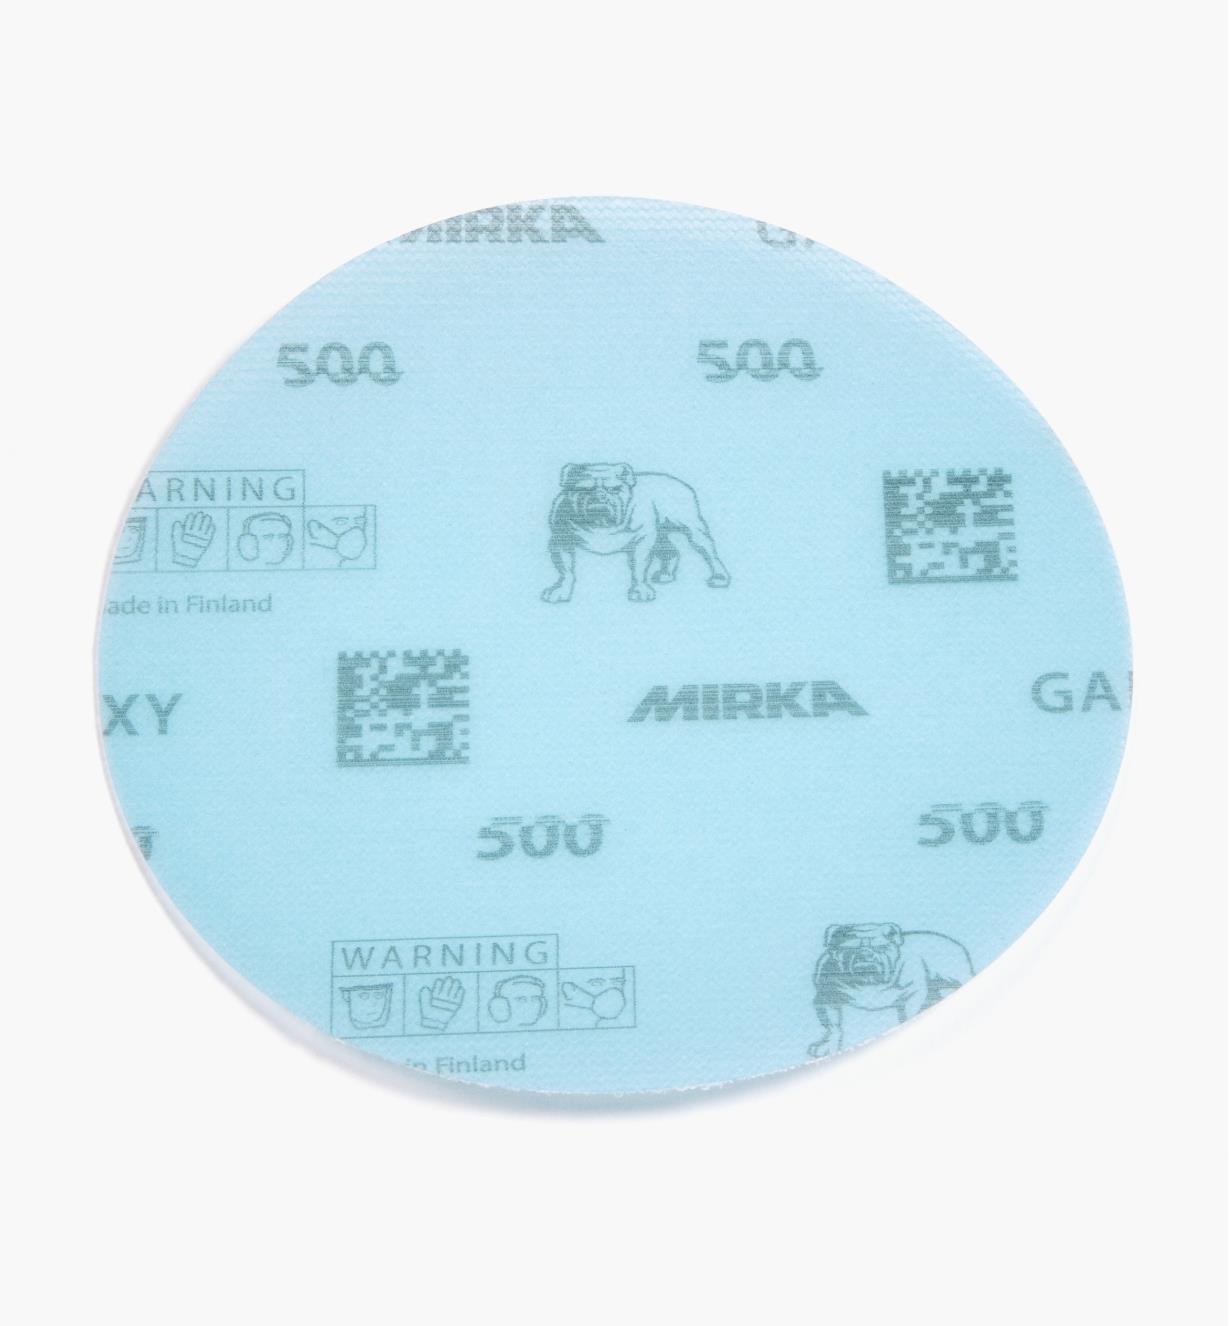 08K1312 - 500x 5" Galaxy Grip Disc, ea.